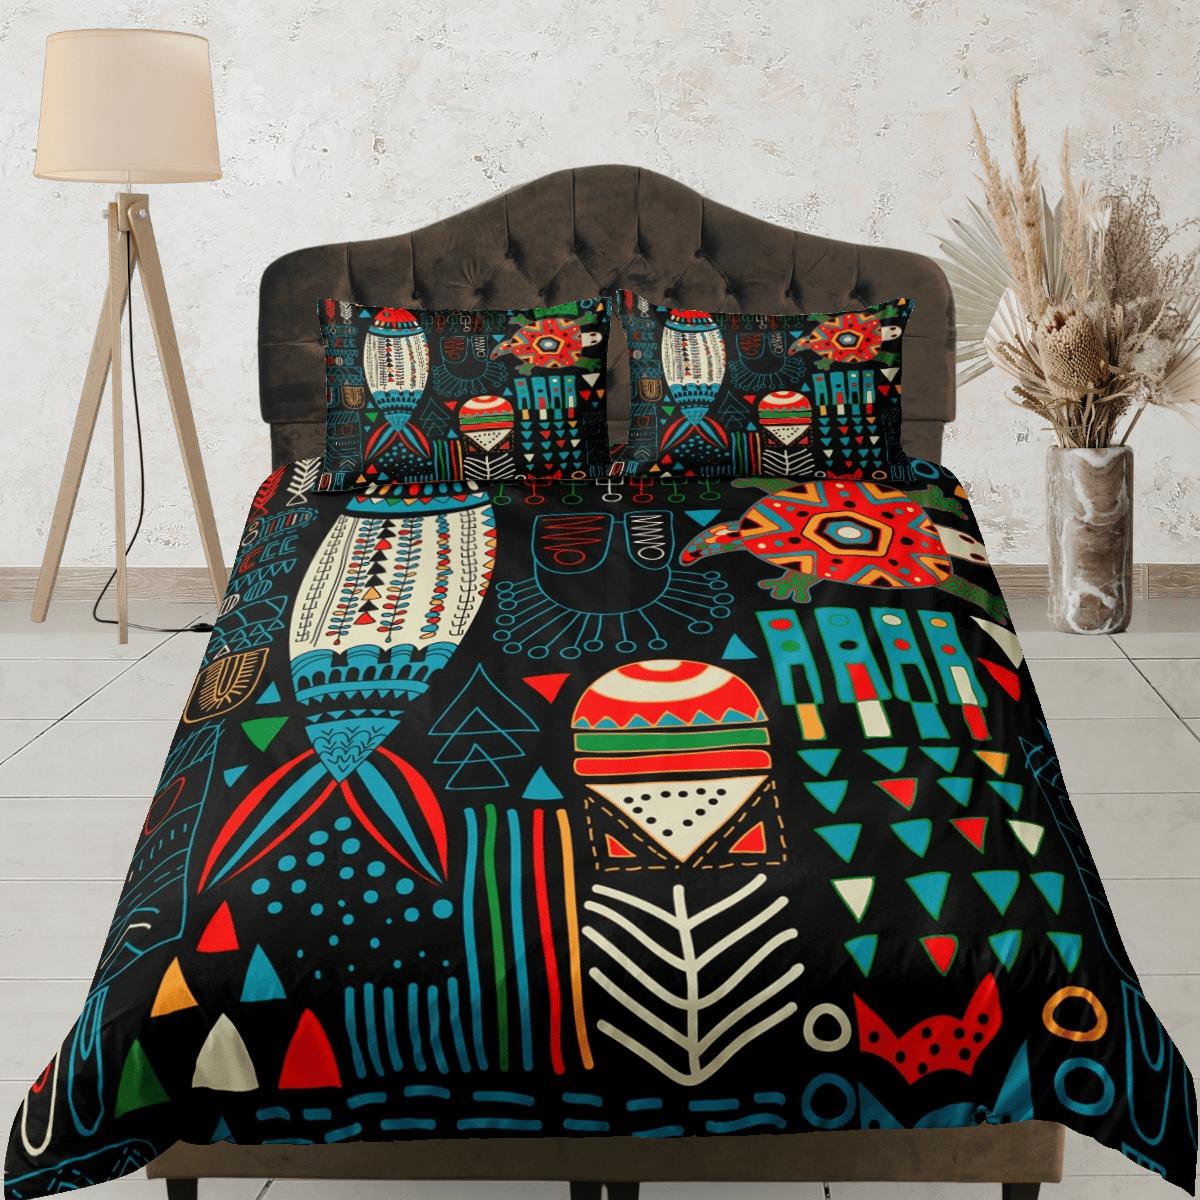 daintyduvet African folk arts colorful bedding set duvet cover, boho bedding, ethnic tribal designs, afrocentric designer bedding, south african gift